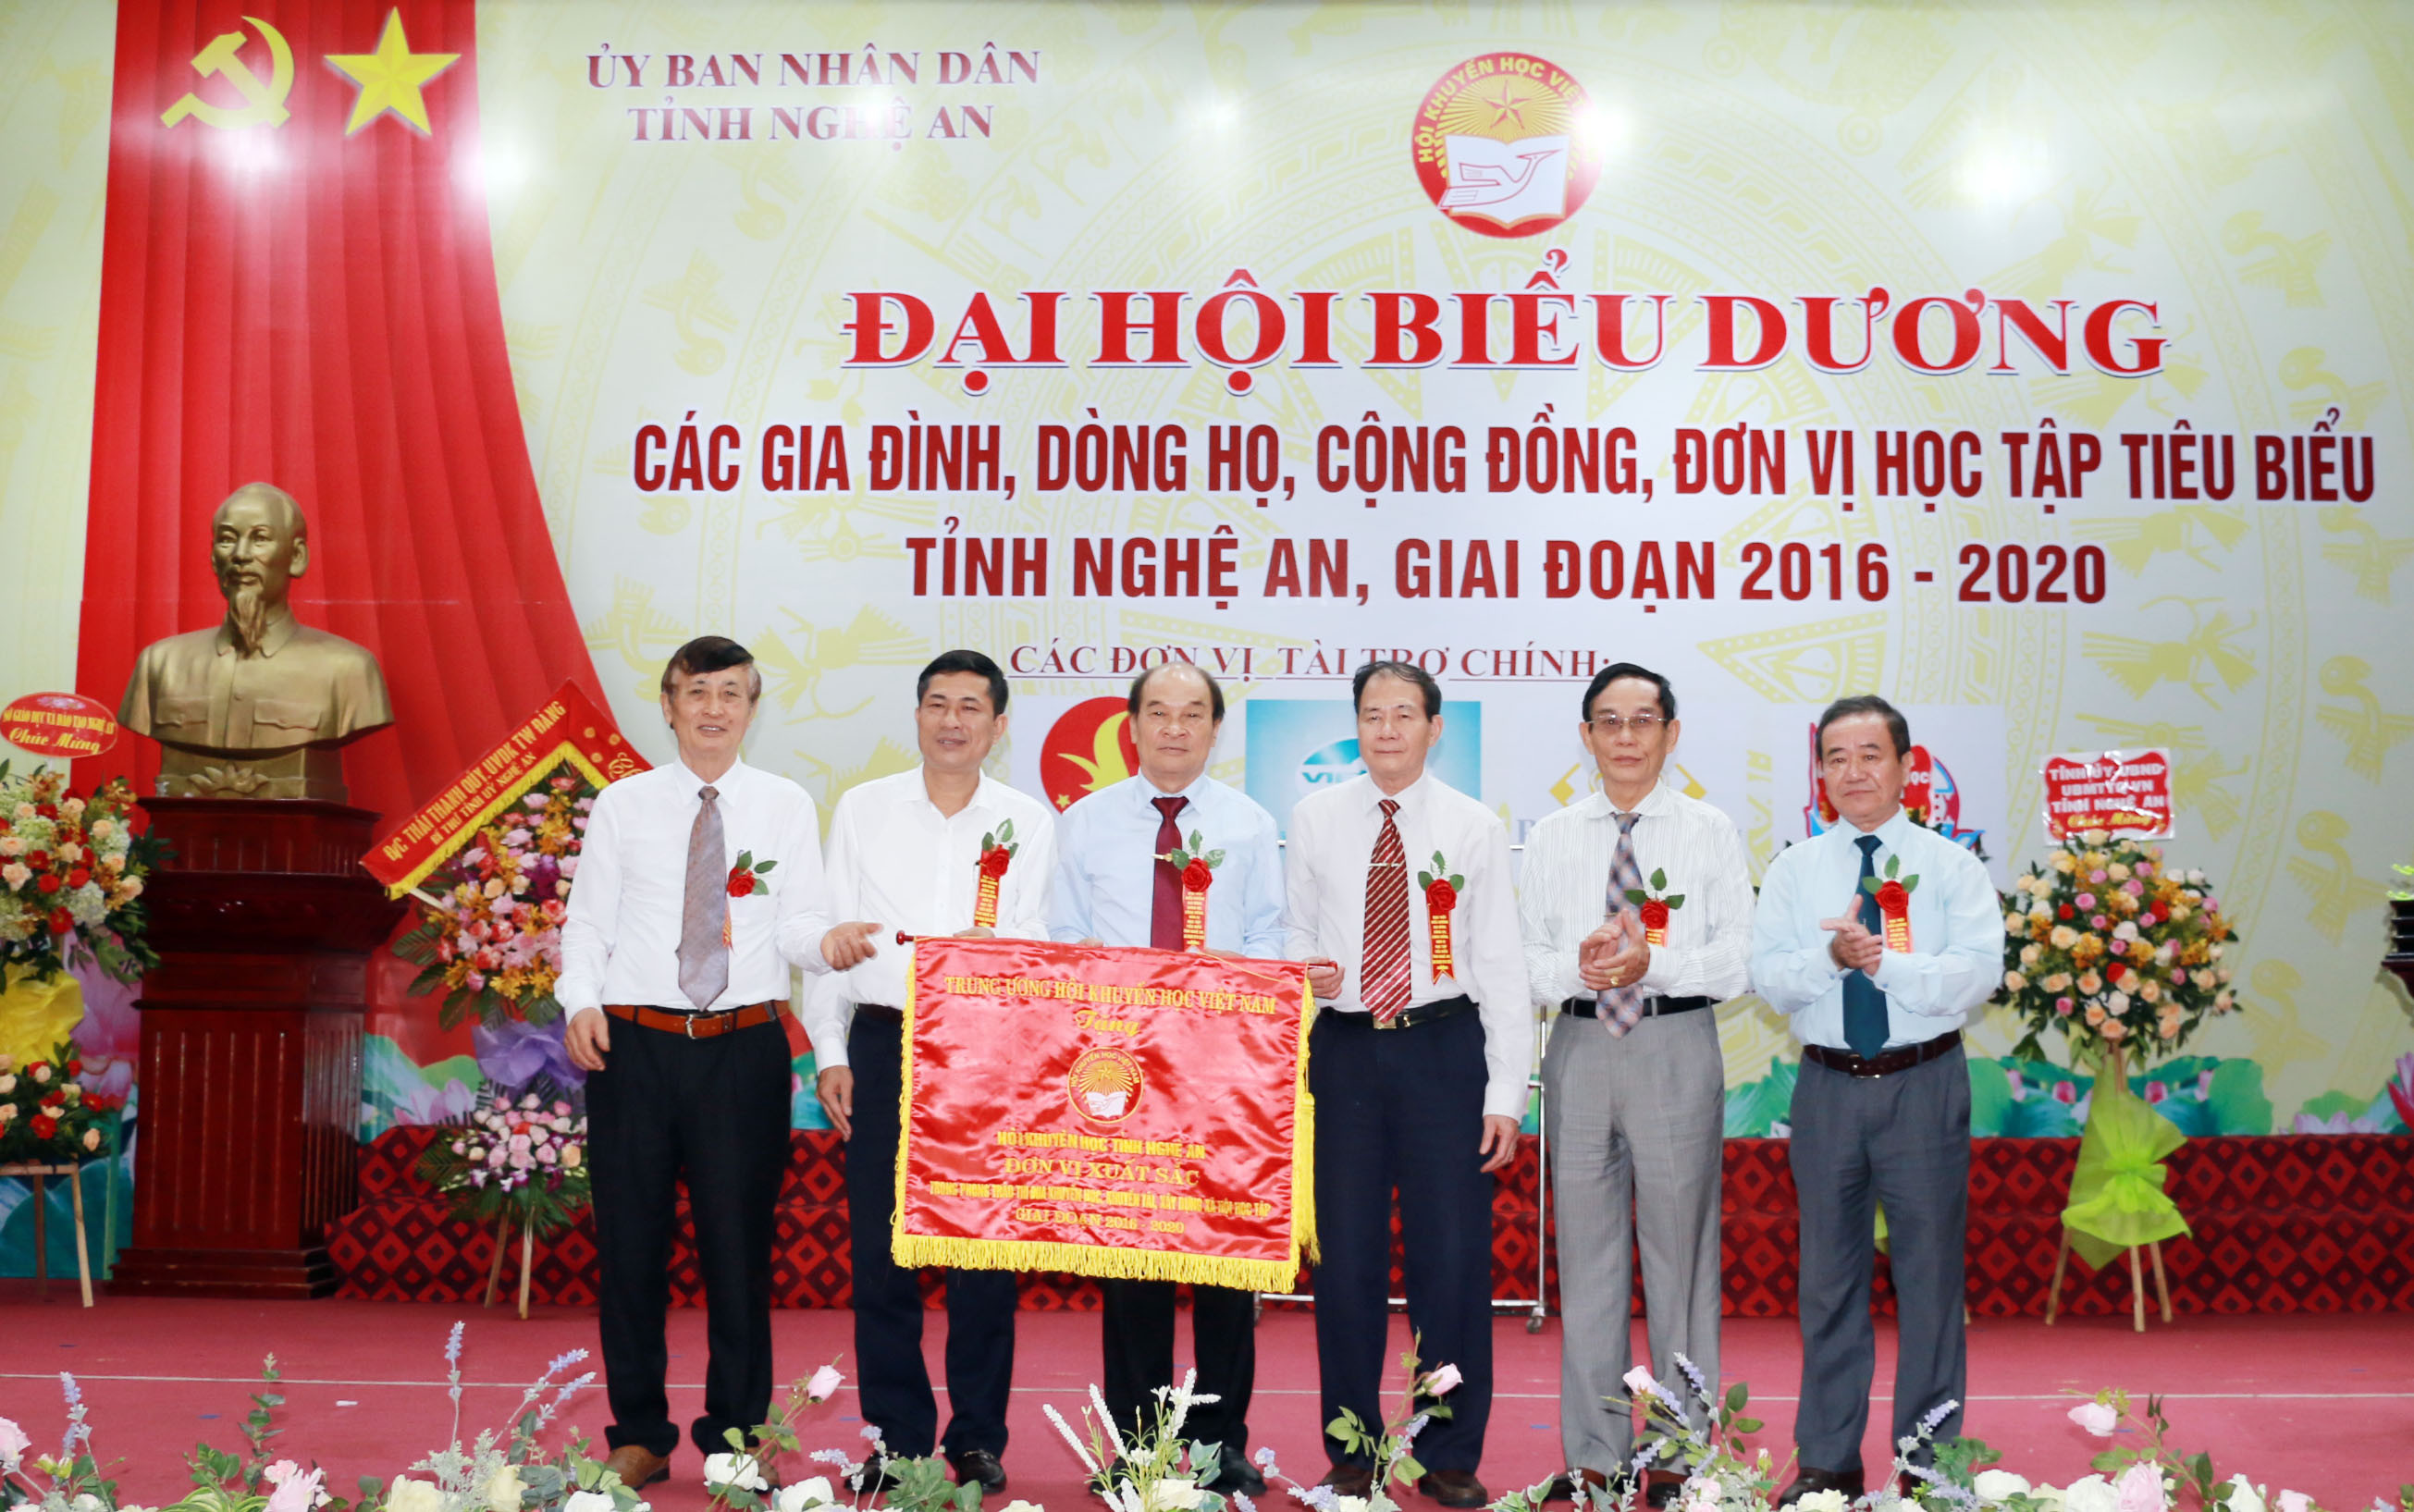 Trung ương Hội Khuyến học Việt Nam trao cờ thi đua cho Hội Khuyến học tỉnh Nghệ An. Ảnh: Mỹ Hà